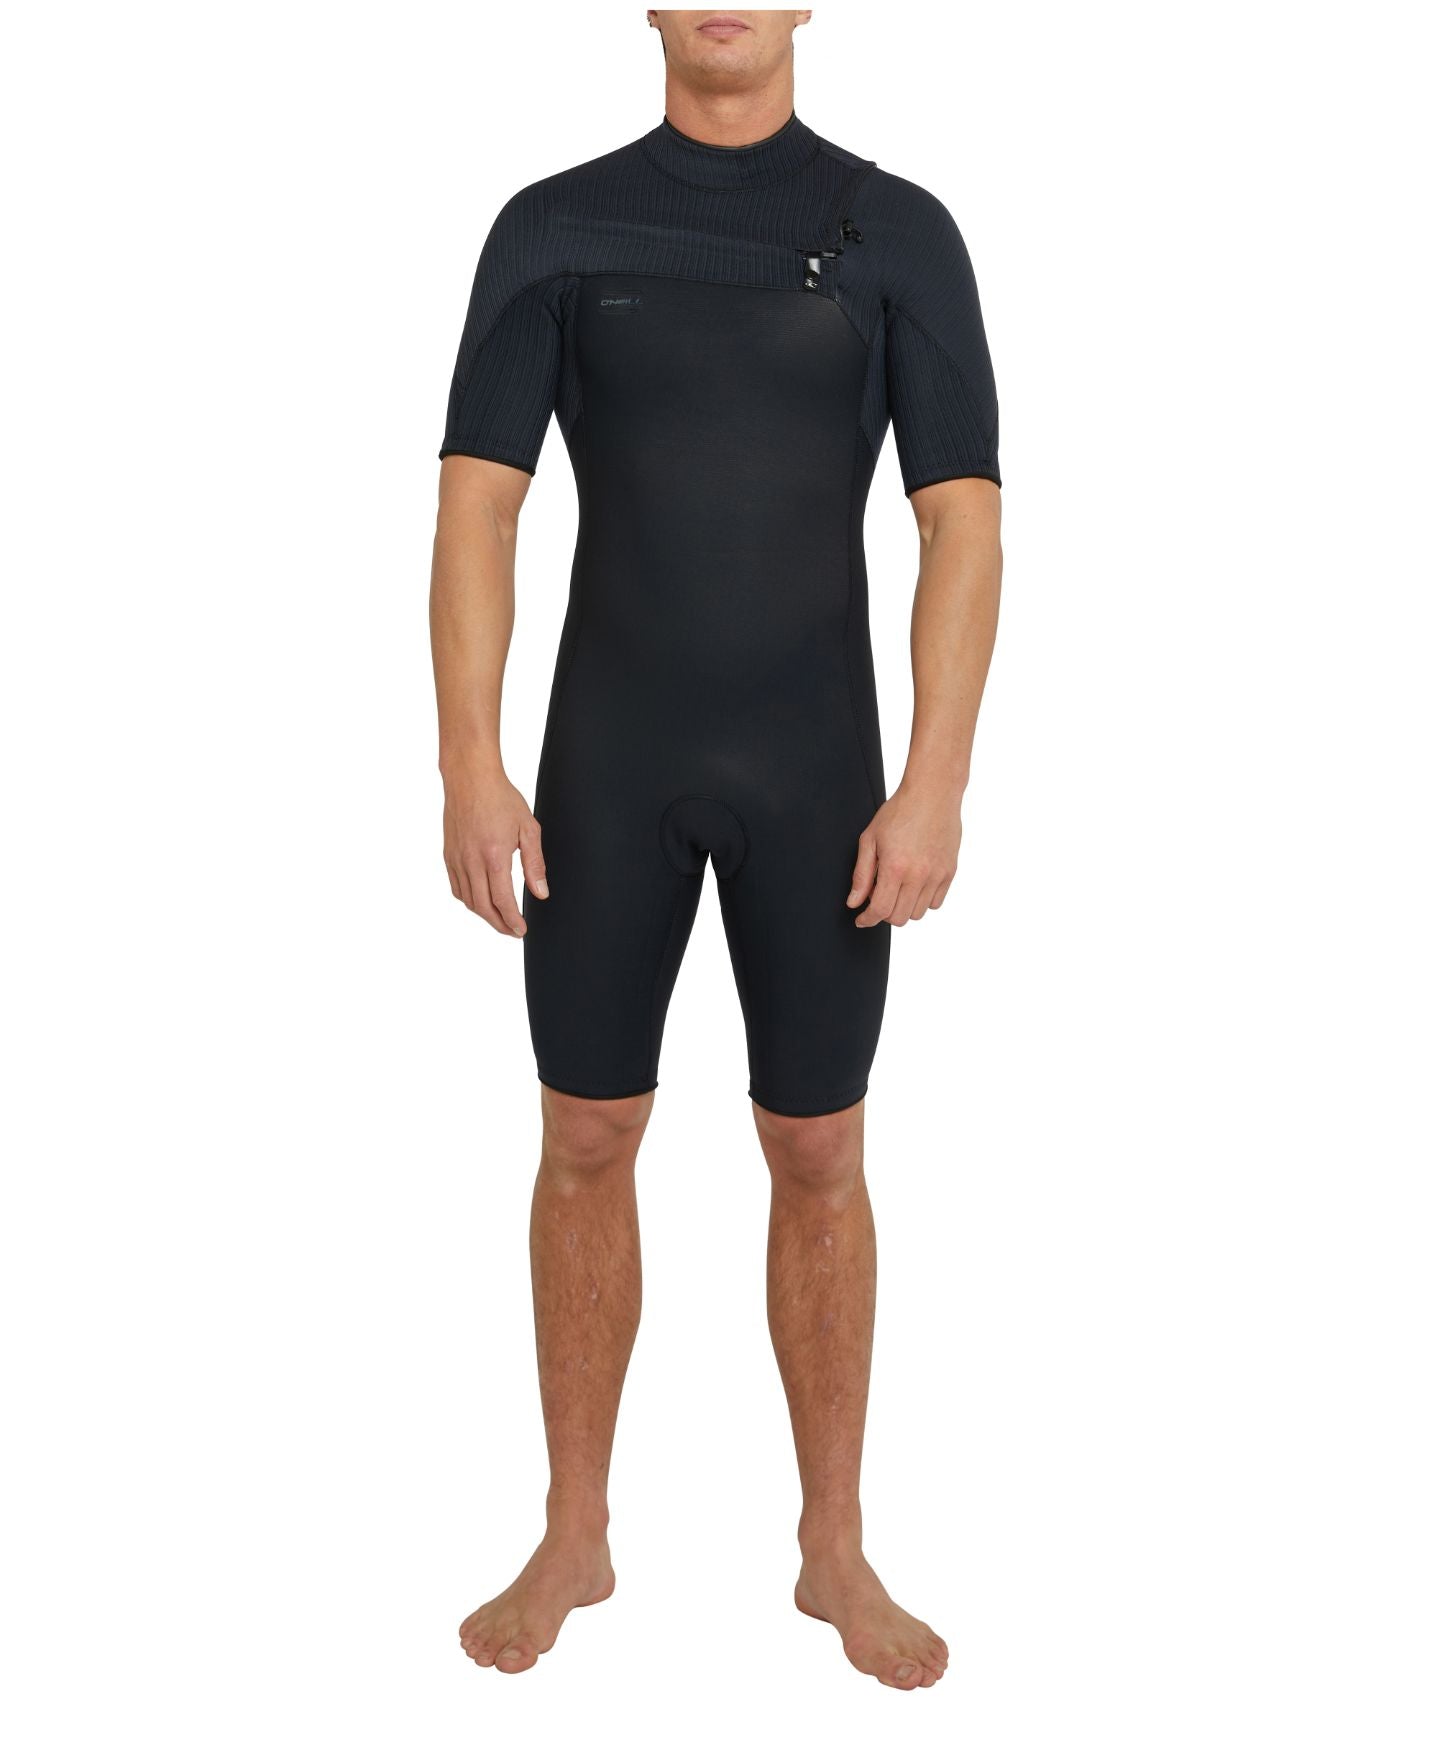 Buy Hyperfreak Short Sleeve Springsuit 2mm Chest Zip Wetsuit - Black by ...